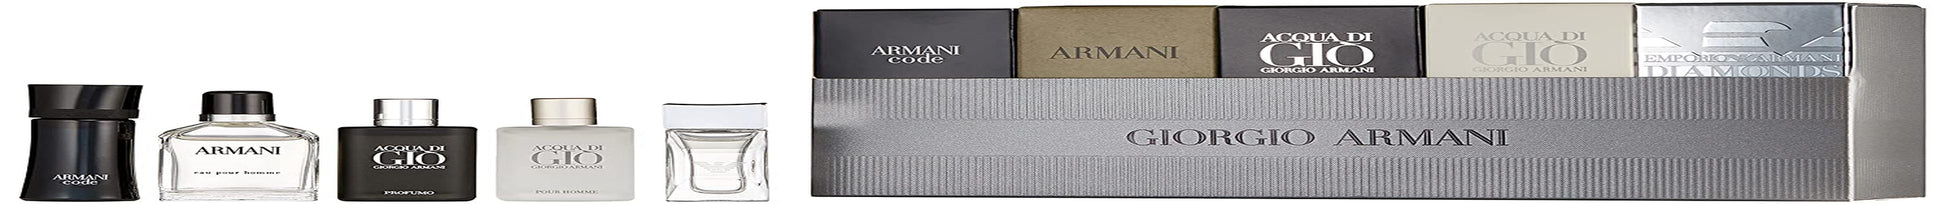 Armani 5 Piece Mini Set for Men Mini Splash 0.13 Oz